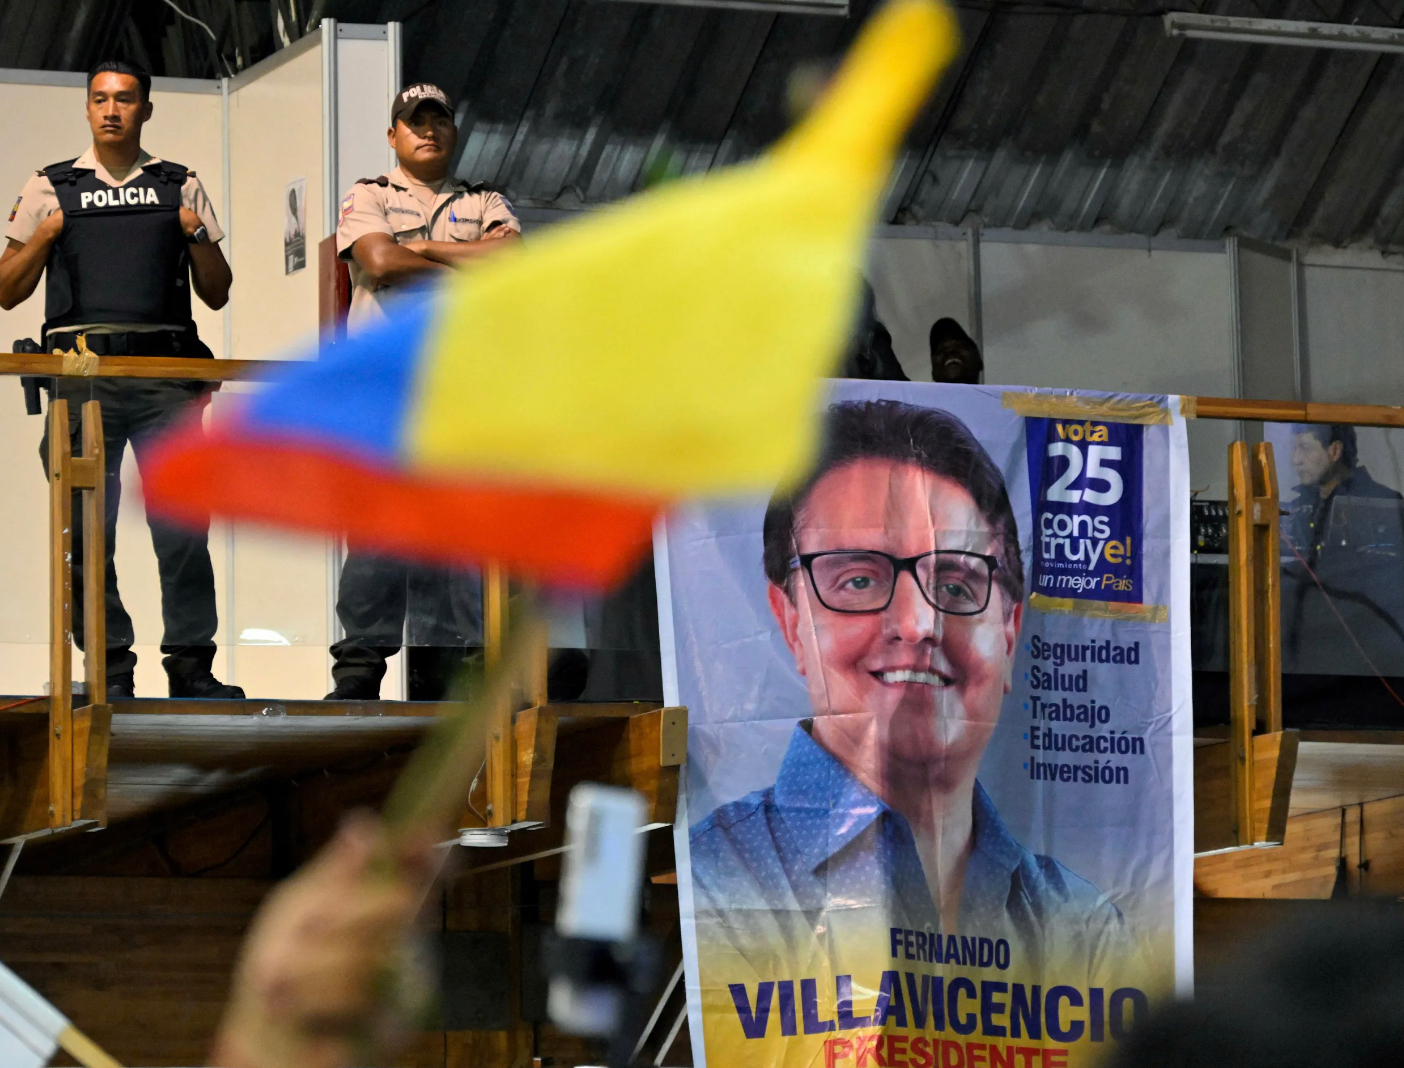 Соучастники убийства эквадорского кандидата в президенты получили от 12 до 34 лет тюрьмы